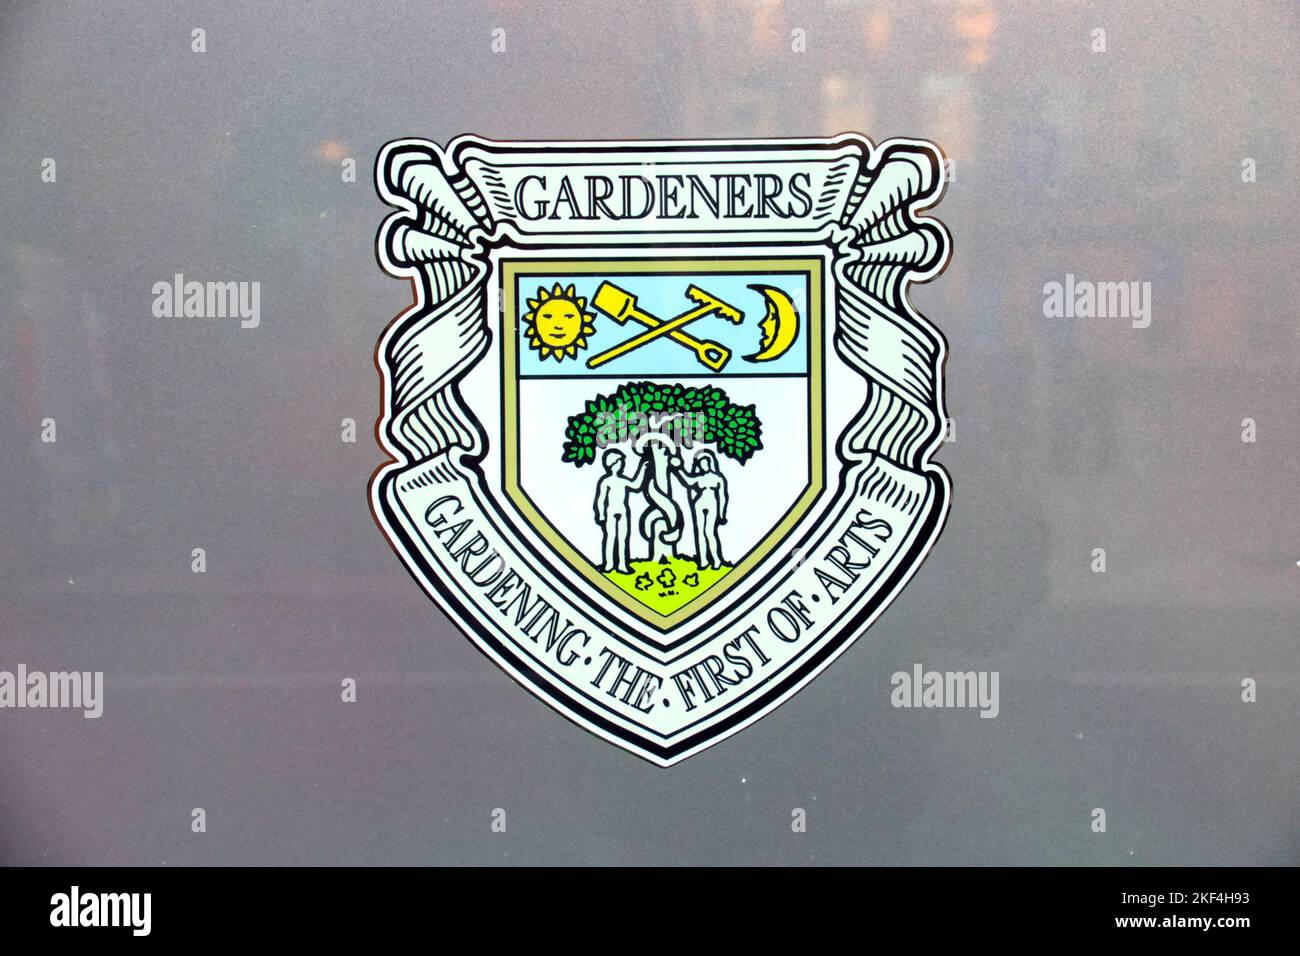 Commerce hall Glasgow gros plan des armoiries pour les jardiniers de guilde Banque D'Images